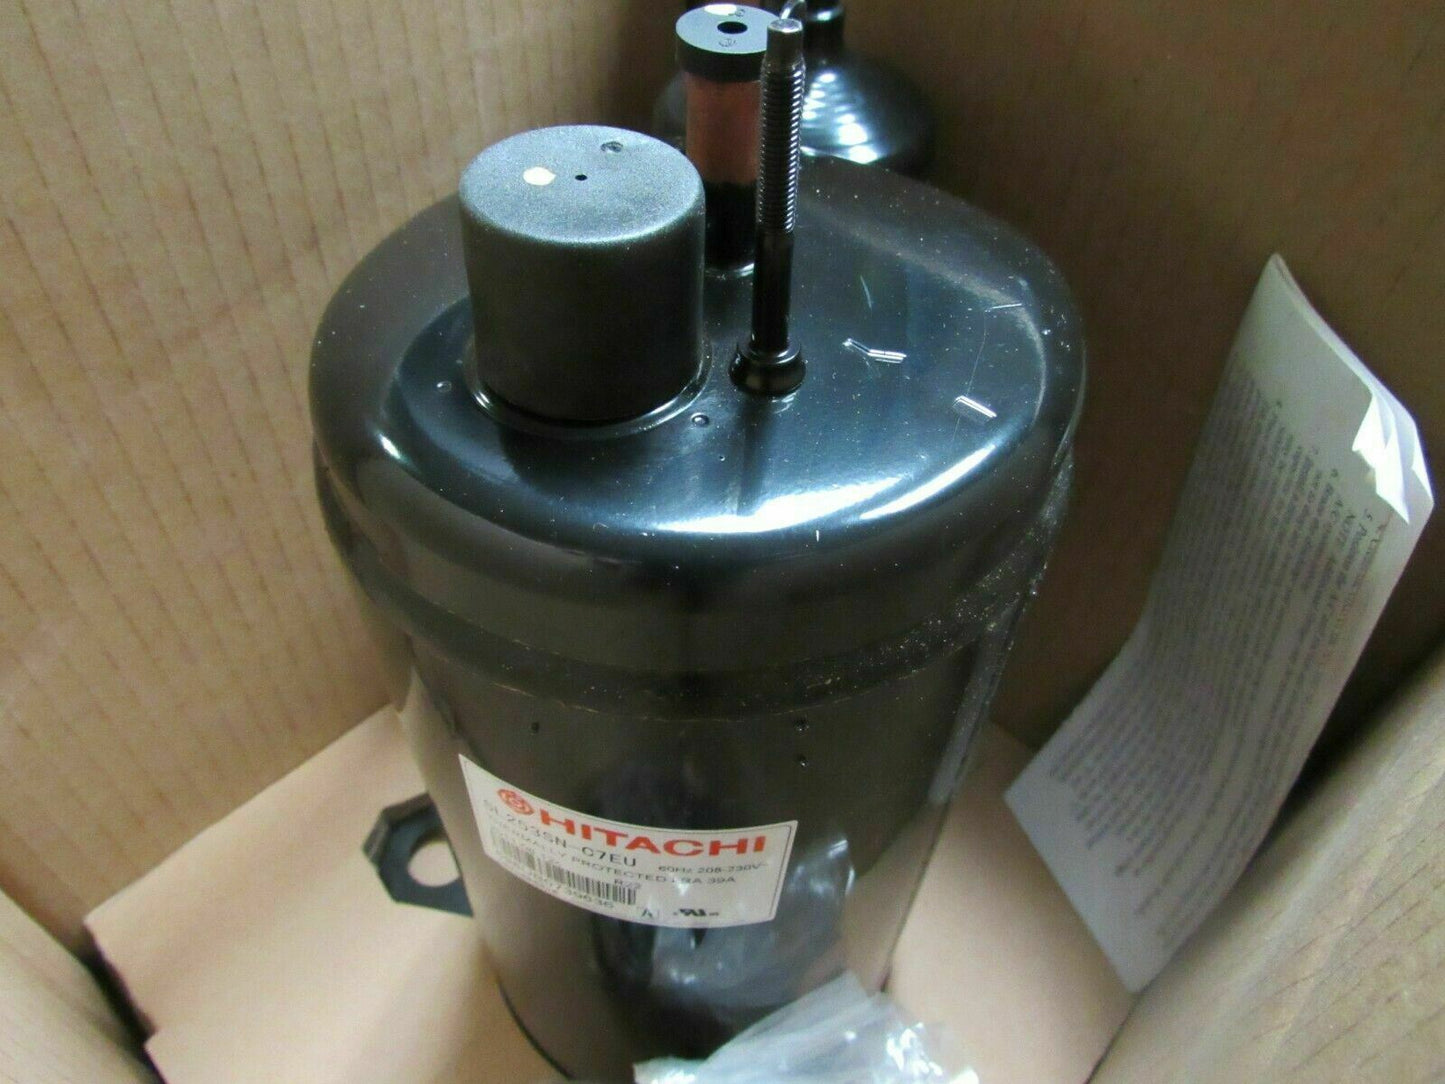 Hitachi A/C Compressor, 1 Phase, R-22, 15,240 BtuH, 208/230 Voltage, 6.2 Amps (184323098526-BT12)